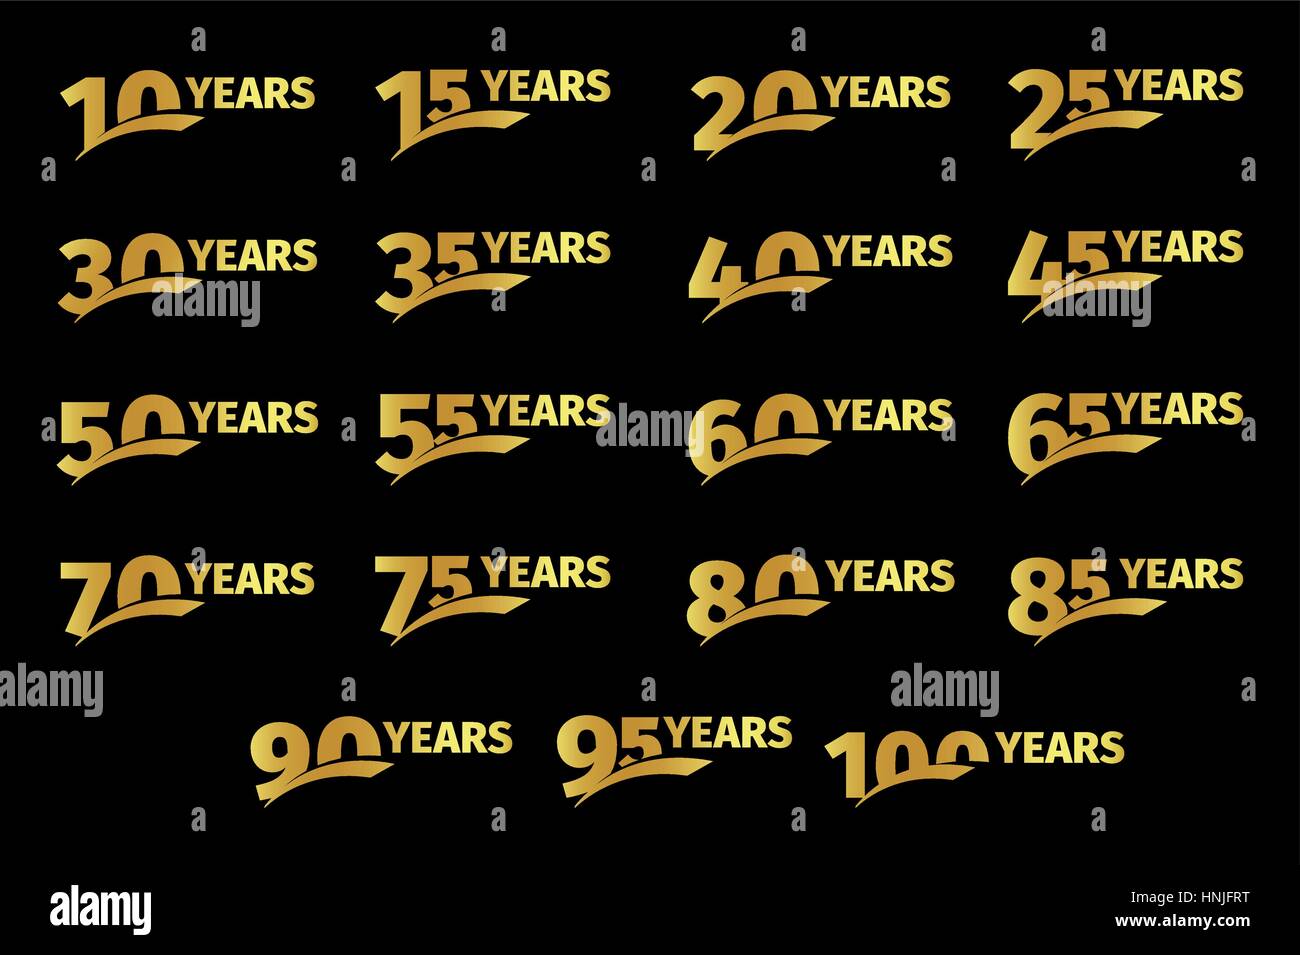 Isolierte goldener Farbe Zahlen mit Wort Jahre Symbolsammlung auf schwarzem Hintergrund, Geburtstag Geburtstag Grußkarte Elemente gesetzt Vektor illustratio Stock Vektor